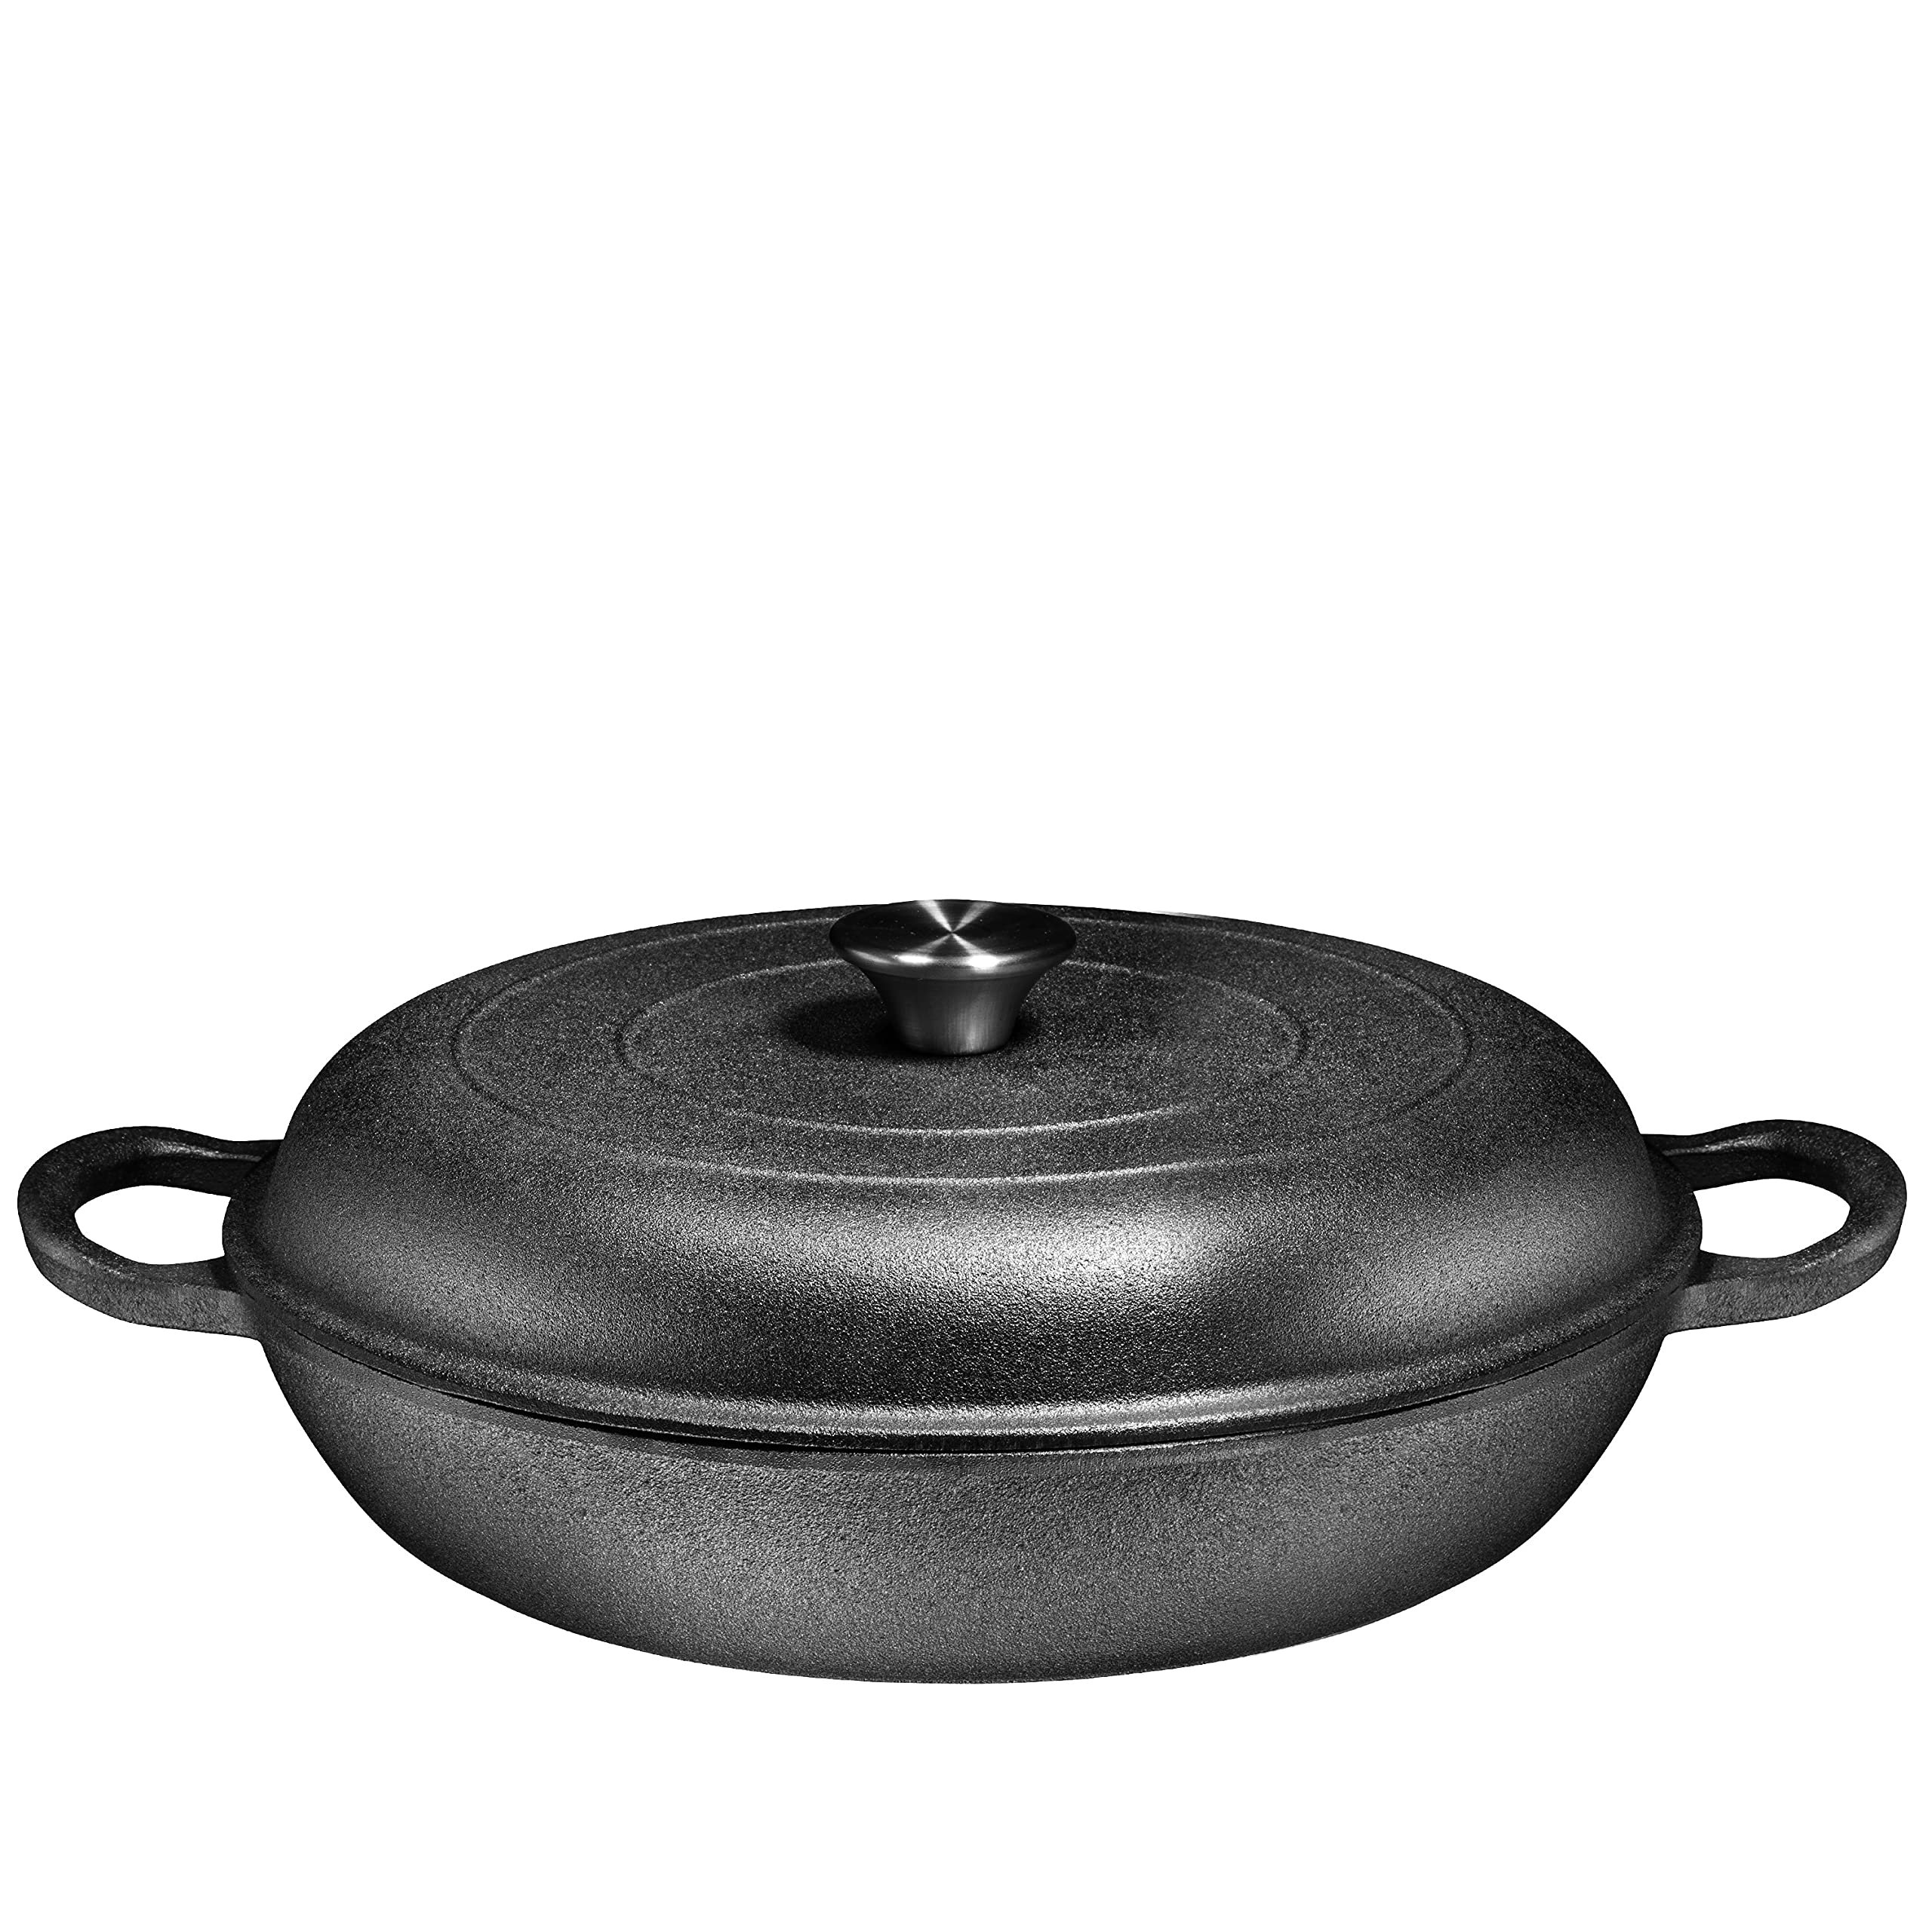 Bruntmor Enameled Dutch Oven Pot With Lid Set Of 2 in Black